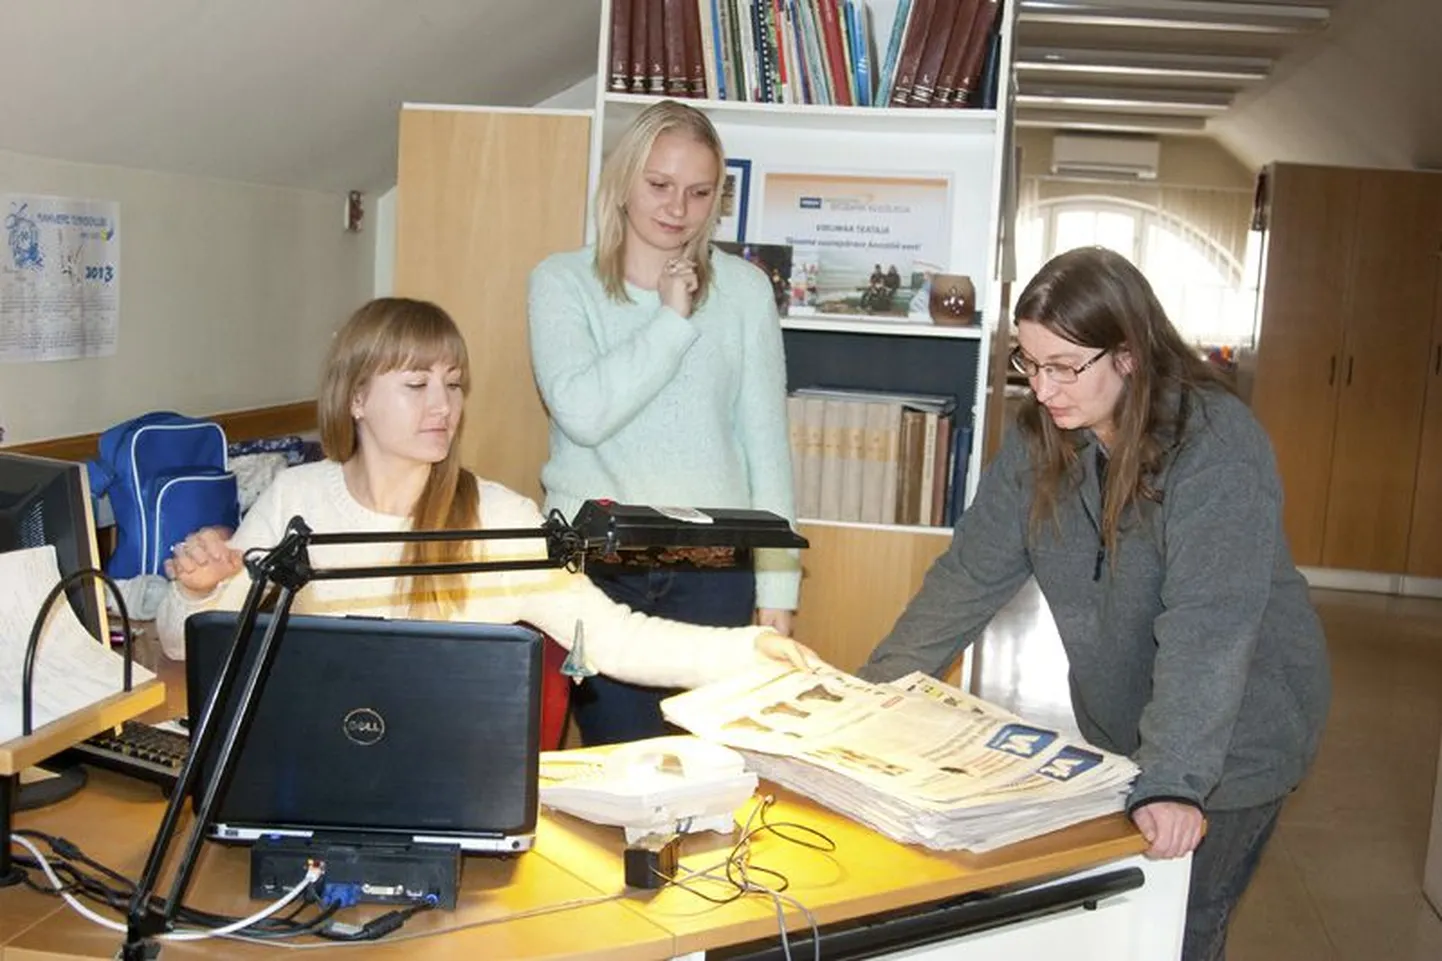 Töövari Ege-Elizabeth Kaldaru (keskel) tutvub ajakirjanike Merly Raudla ja Eva Klaasi tööga